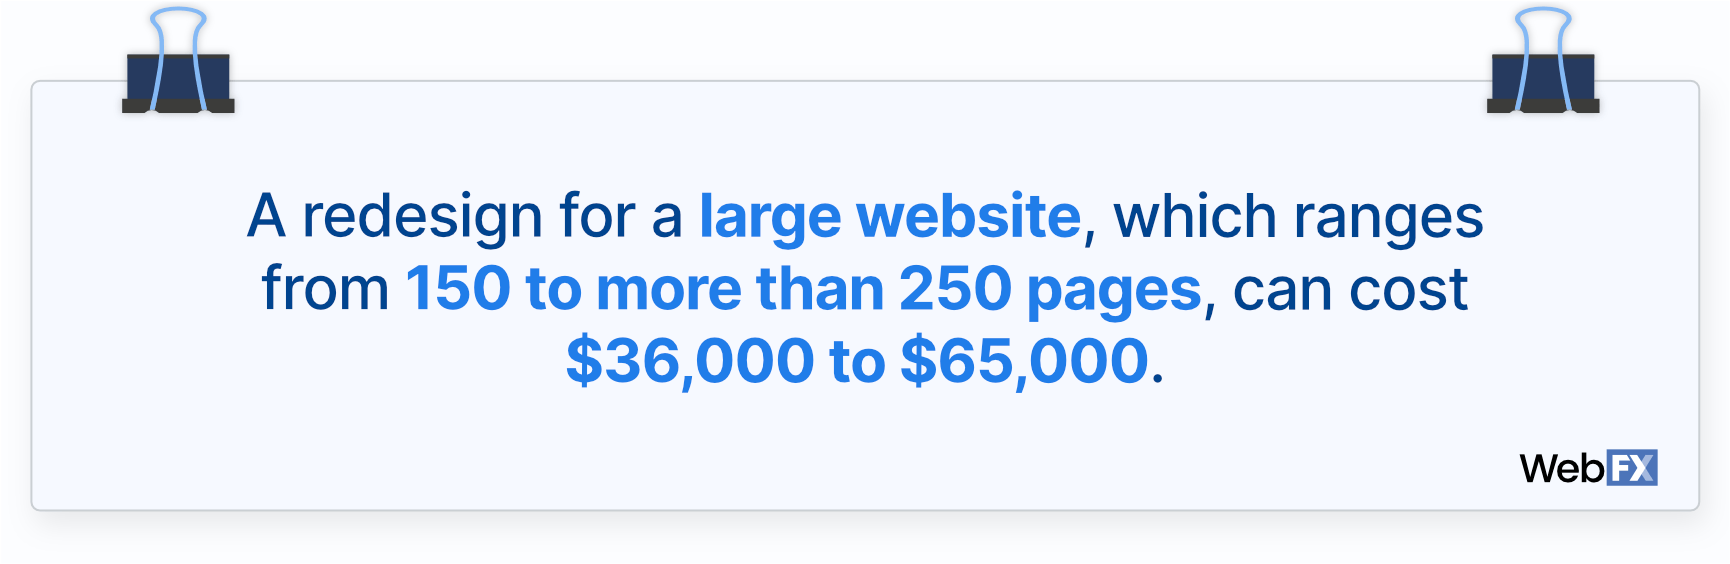 大型网站的平均网站重新设计成本